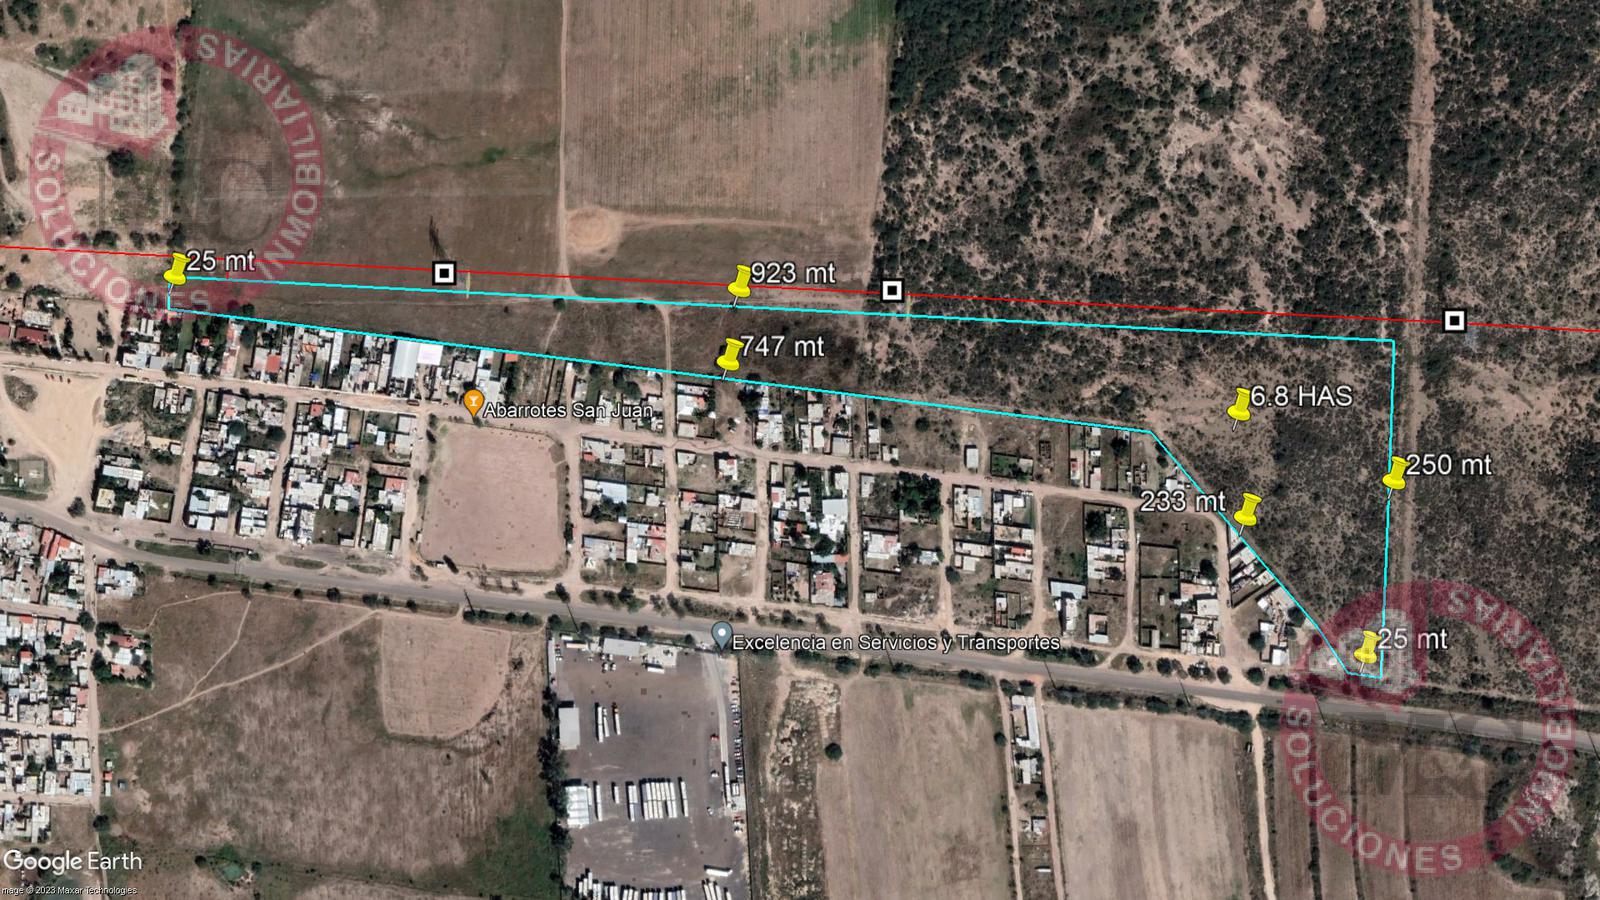 Terreno para desarrollo de Vivienda o Industrial en Cotorina Aguascalientes.